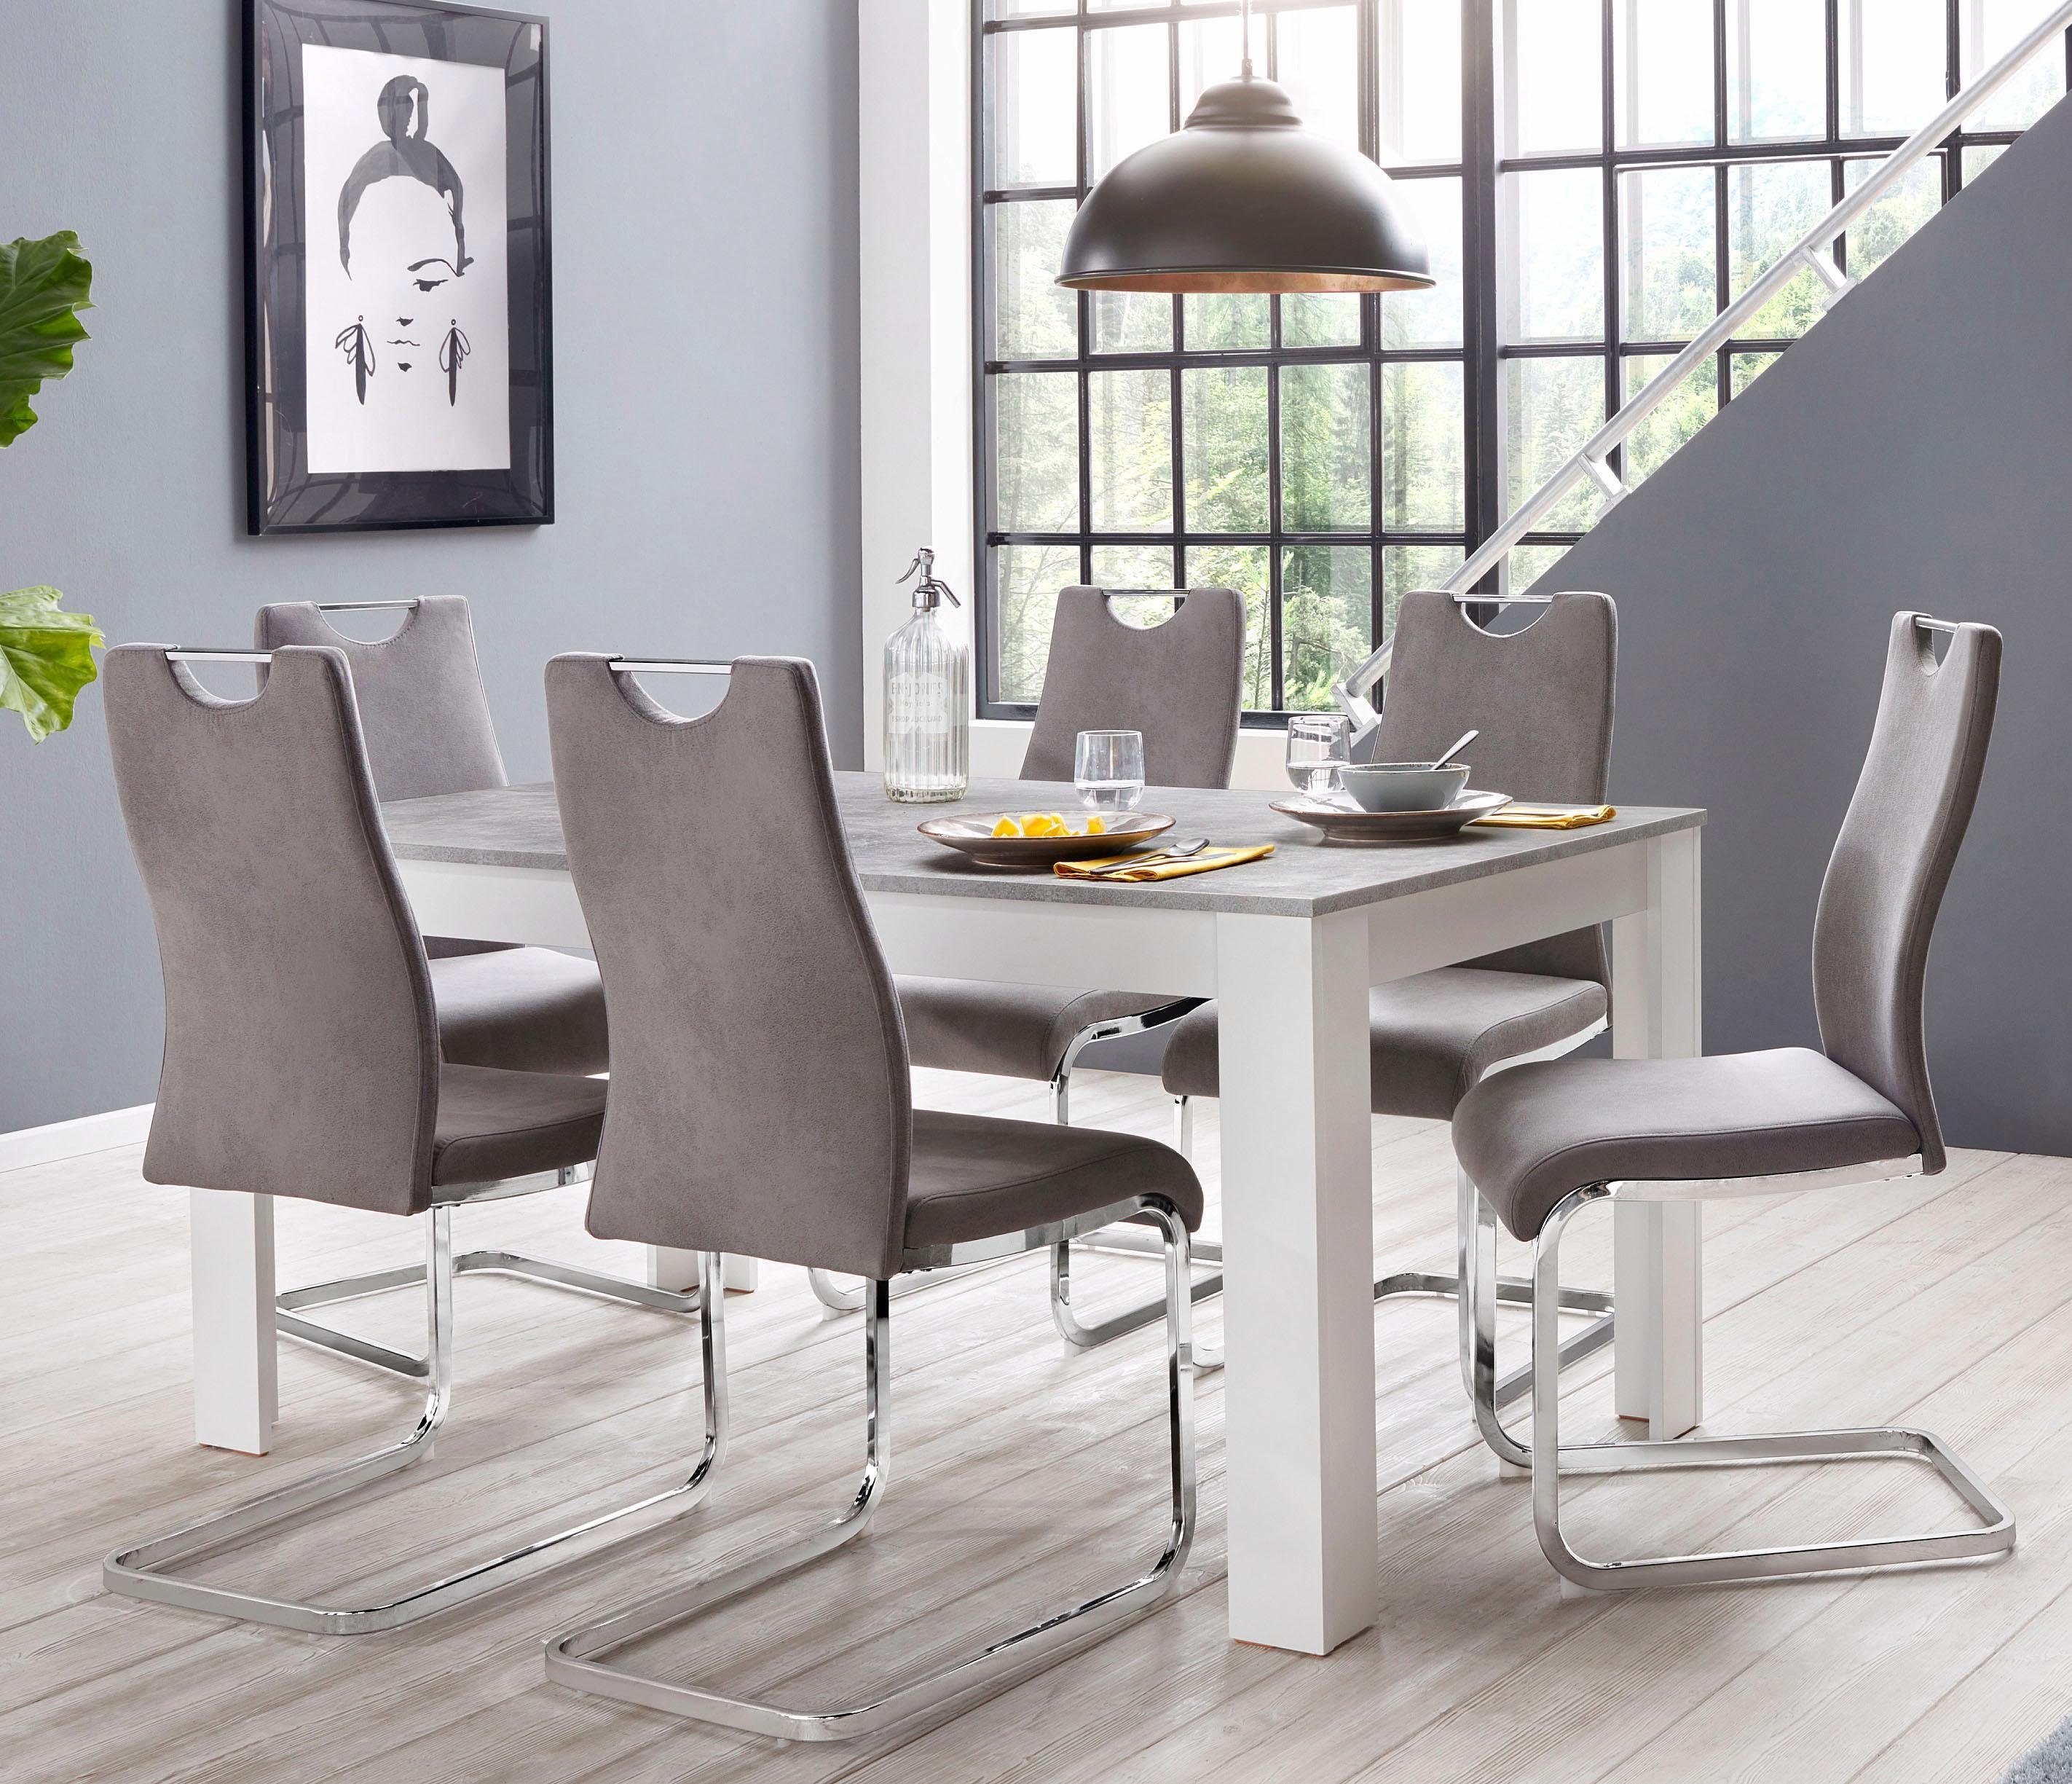 Homexperts »Zabona« Essgruppe (1 Tisch + 4 Stühle) | OTTO